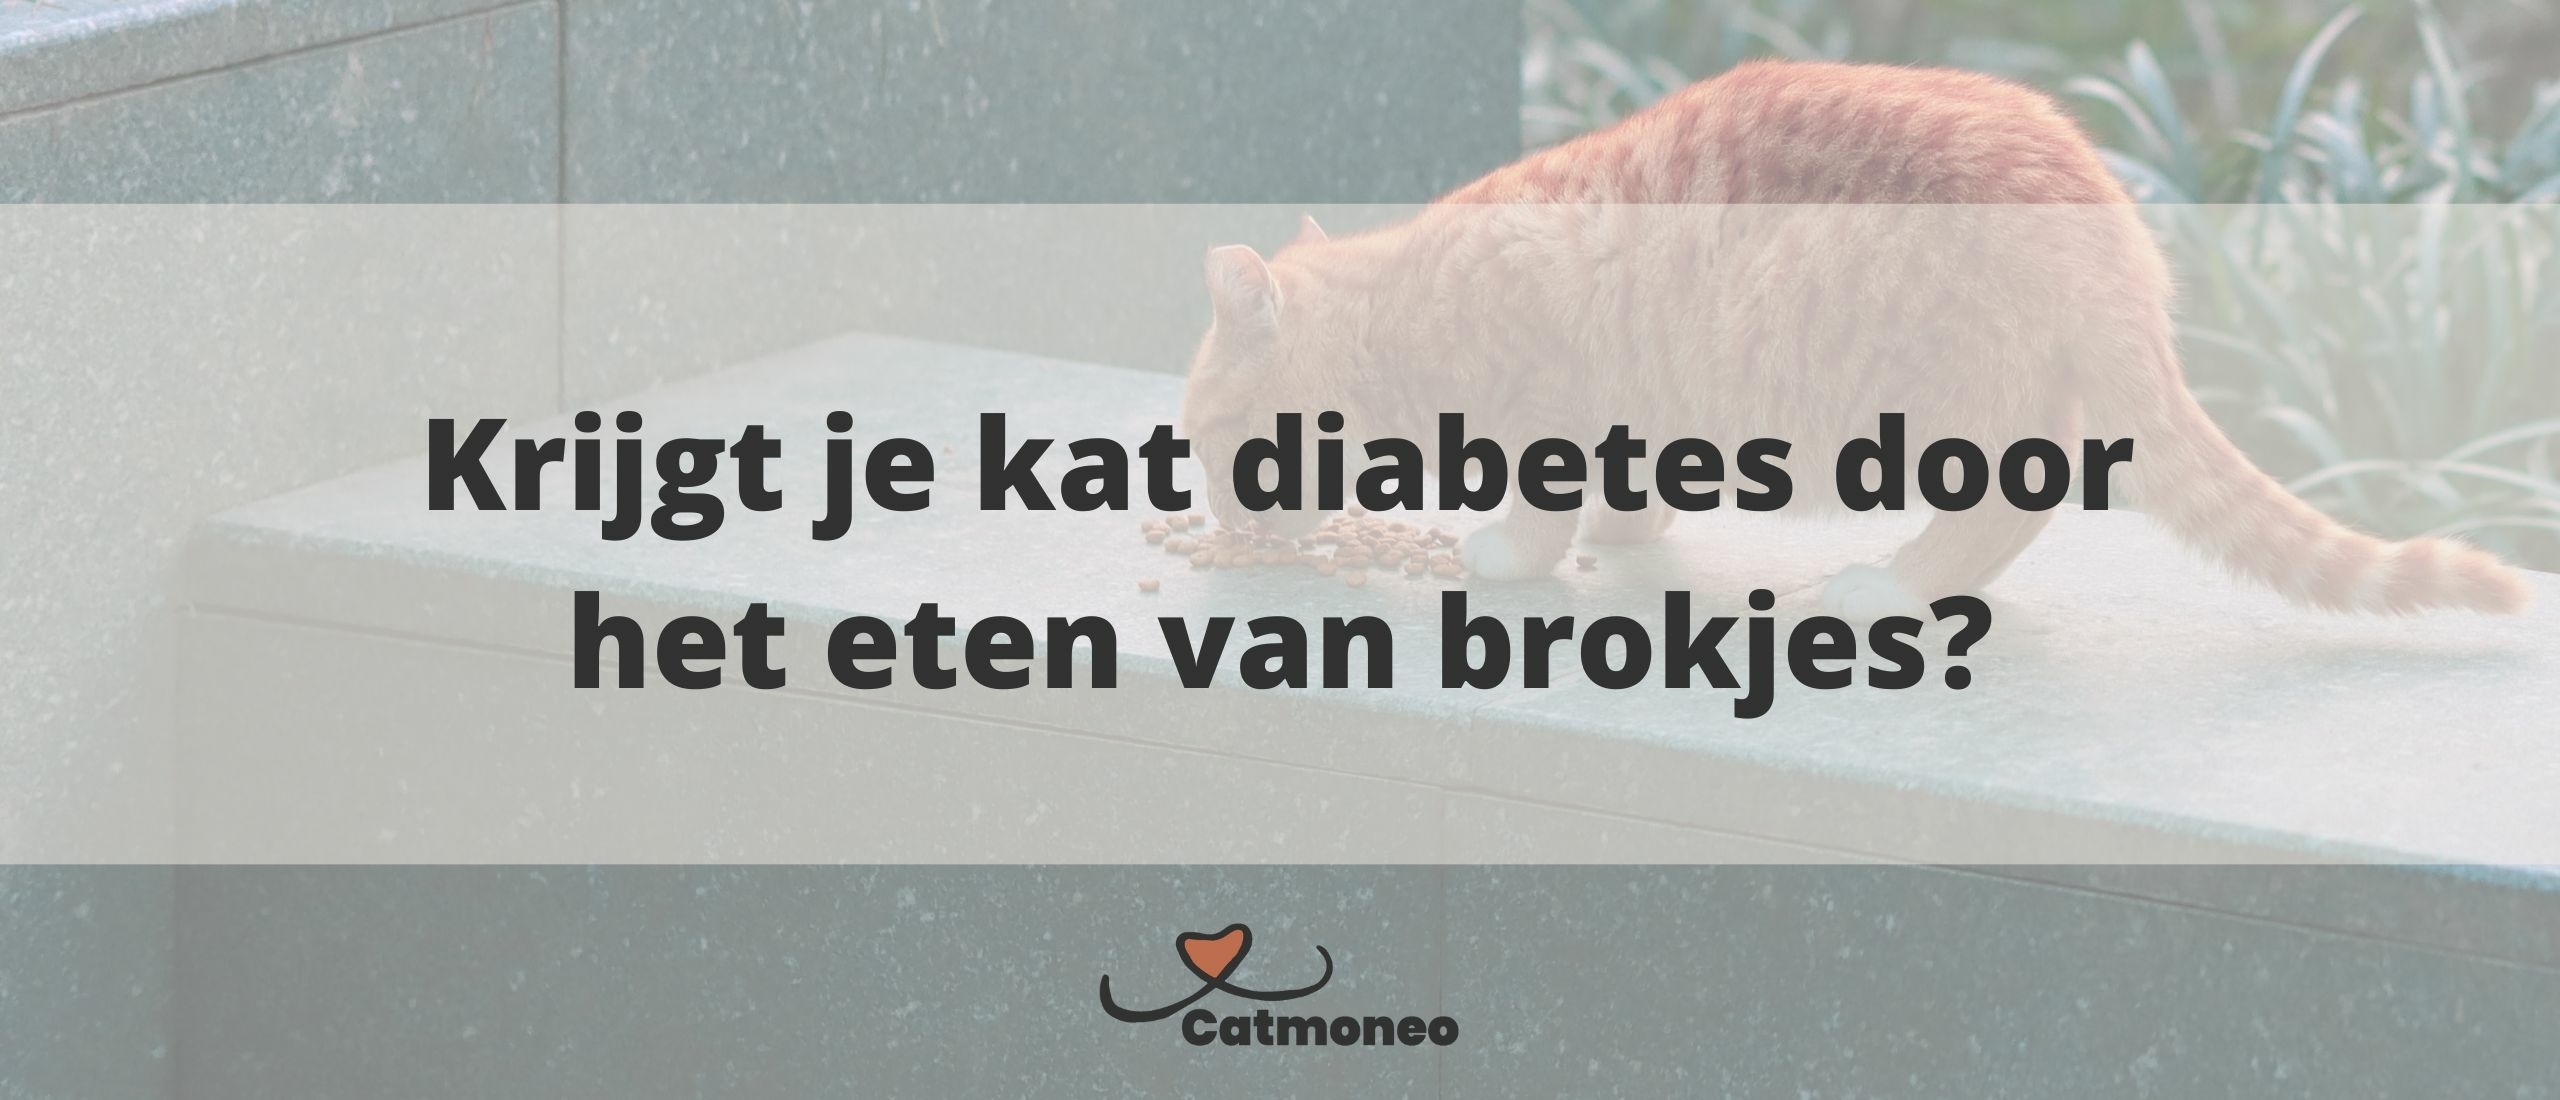 Krijgt je kat diabetes door het eten van brokjes?